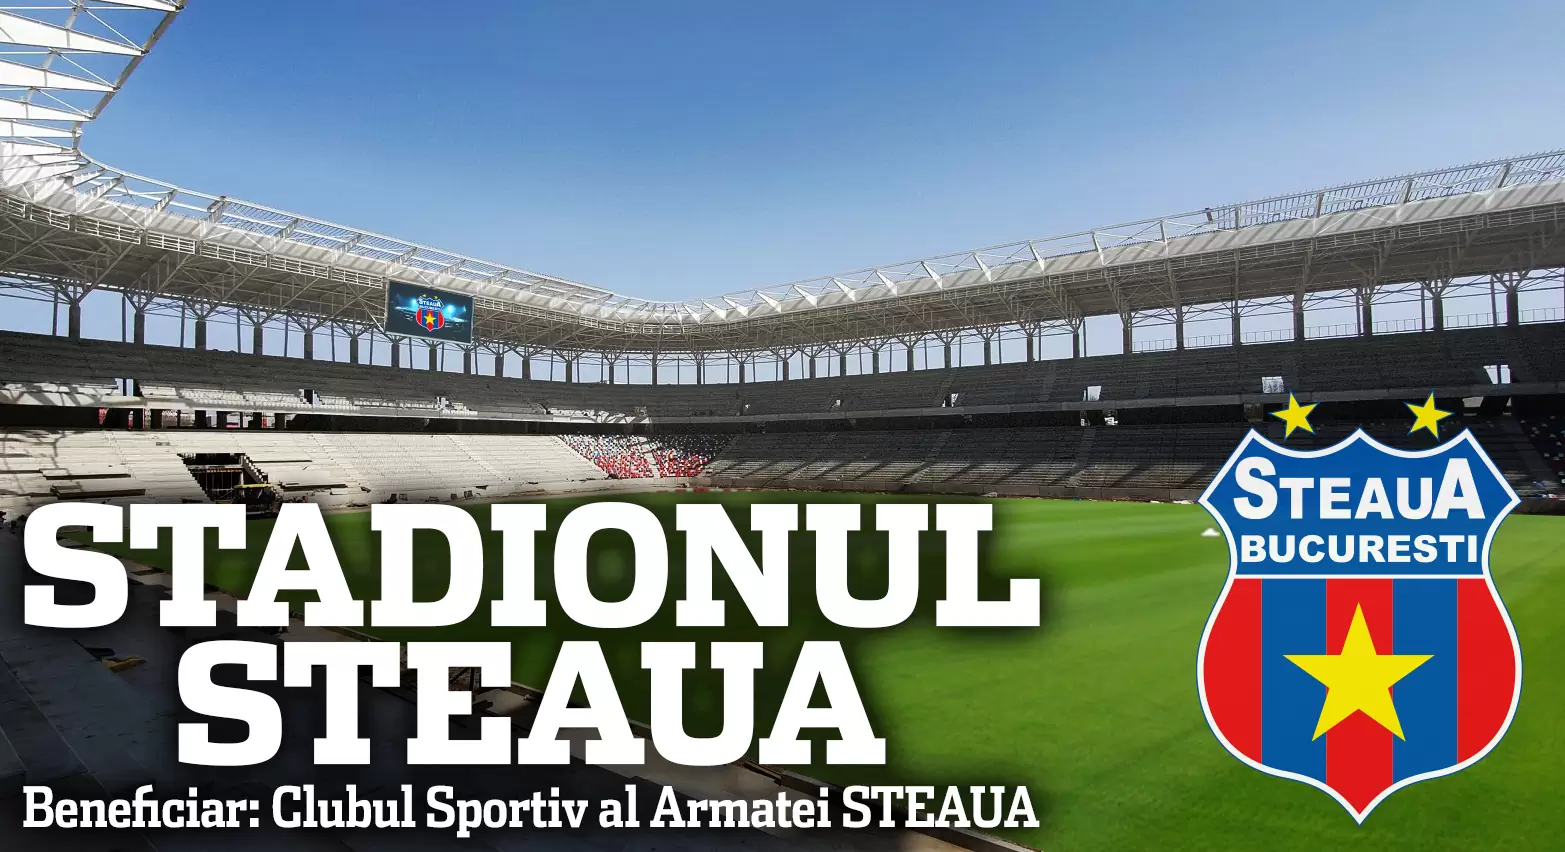 INCREDIBIL! Ministerul Apărării nu știe câți bani se toacă la stadionul Steaua